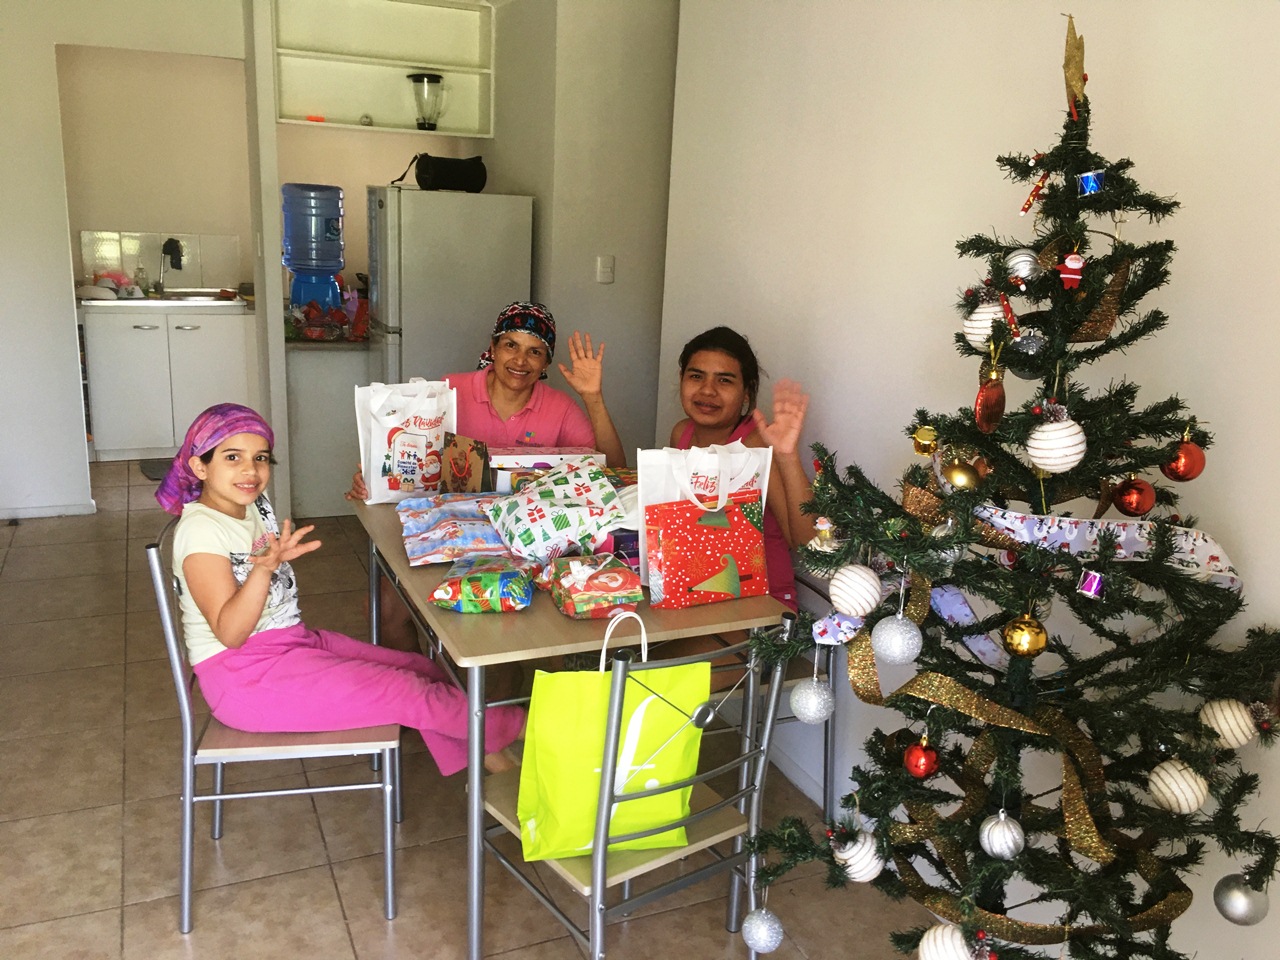 SAN FELIPE: “Gracias chilenos de buen corazón por hacer realidad una navidad soñada con mis hijas”